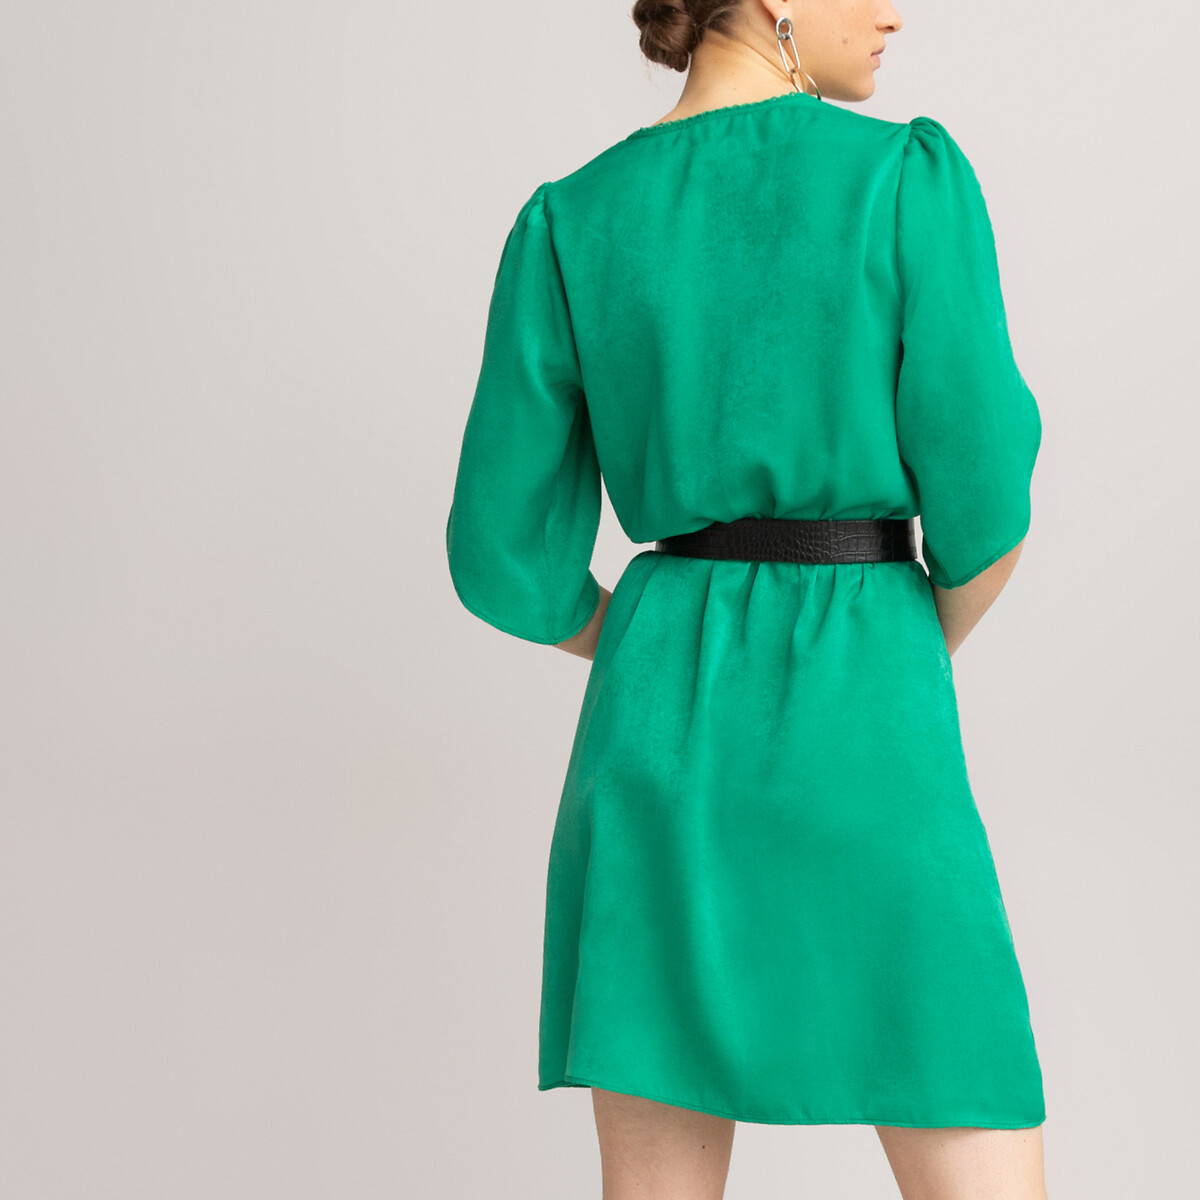 Платье LaRedoute Короткое с запахом короткие рукава 46 (FR) - 52 (RUS) зеленый, размер 46 (FR) - 52 (RUS) Короткое с запахом короткие рукава 46 (FR) - 52 (RUS) зеленый - фото 4